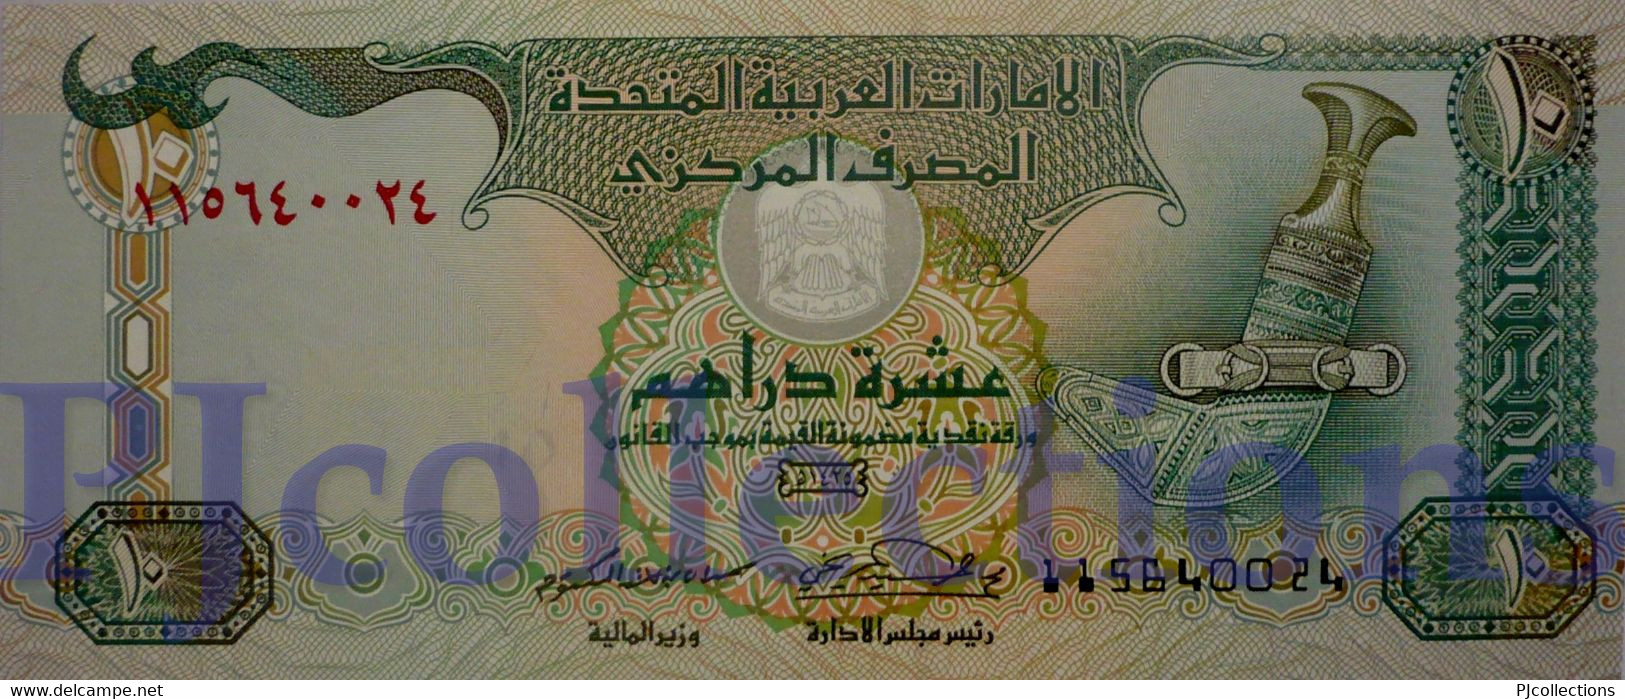 UNITED ARAB EMIRATES 10 DIRHAMS 2004 PICK 20c UNC - Ver. Arab. Emirate